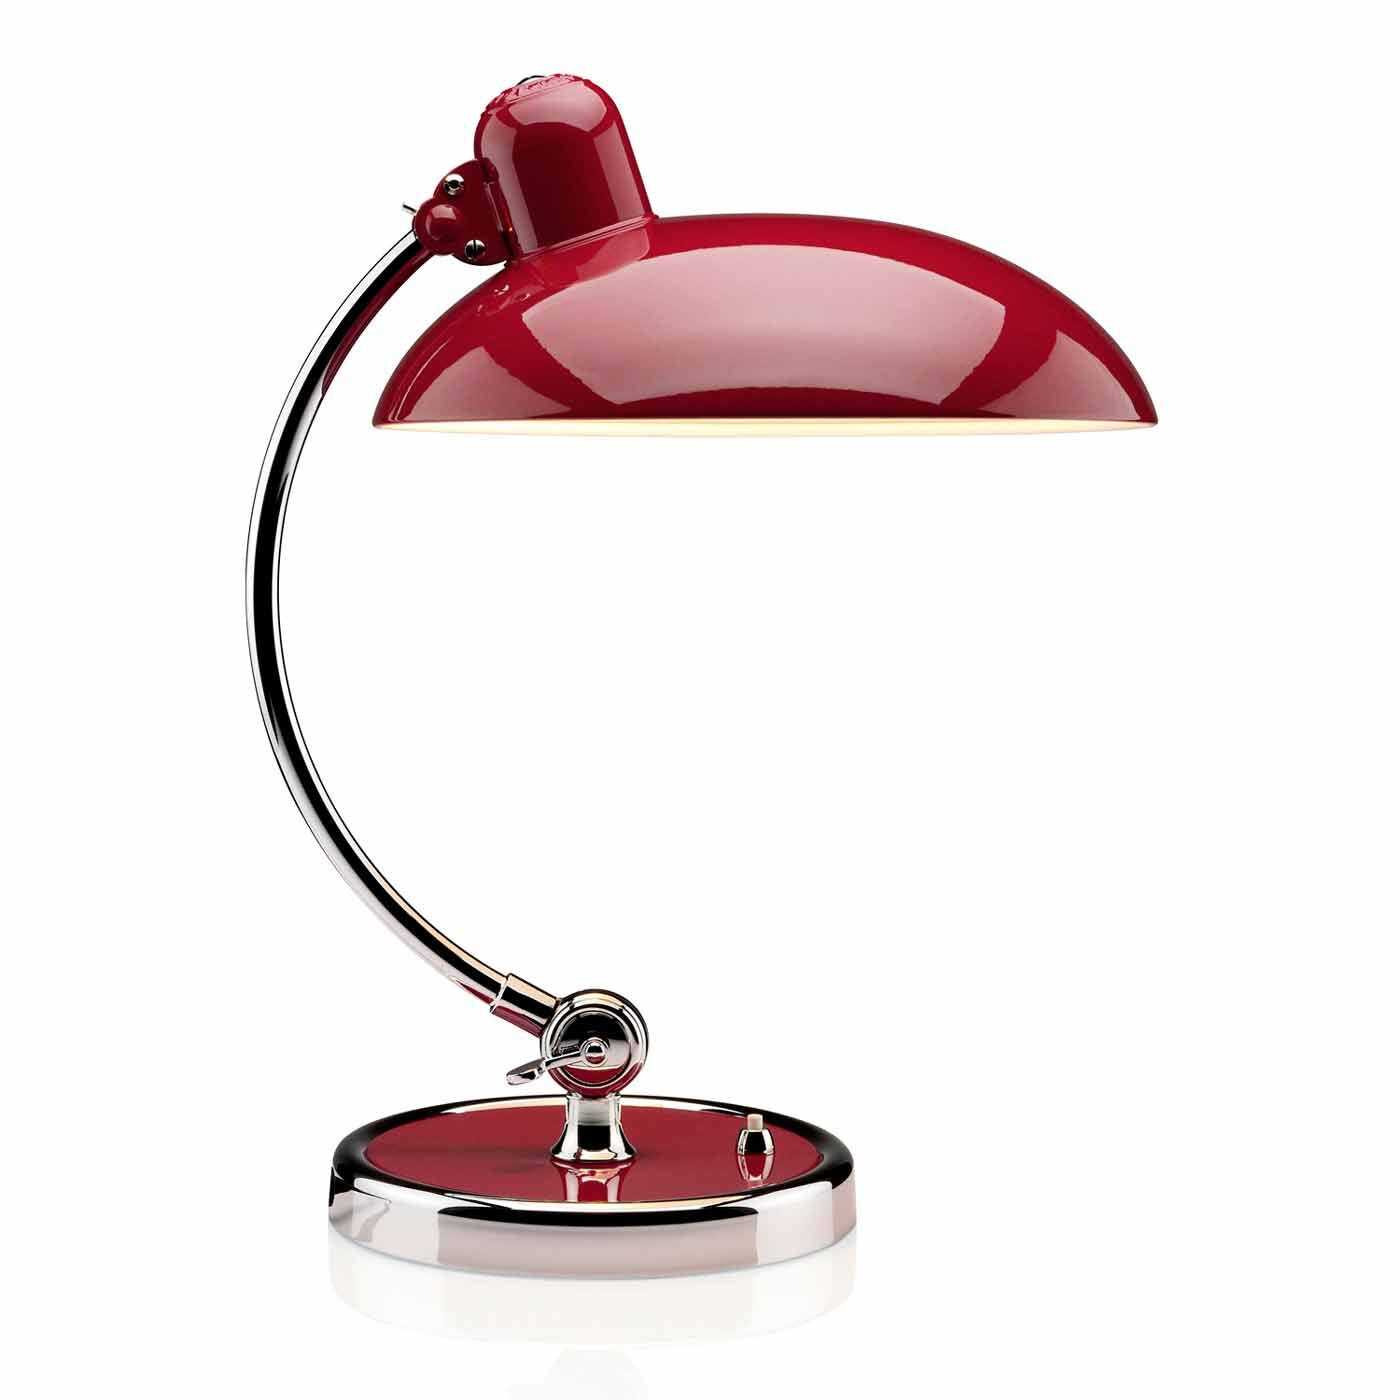 Fritz Hansen Kaiser Idell Luxus Table Lamp Ruby Red & Chrome - image 1